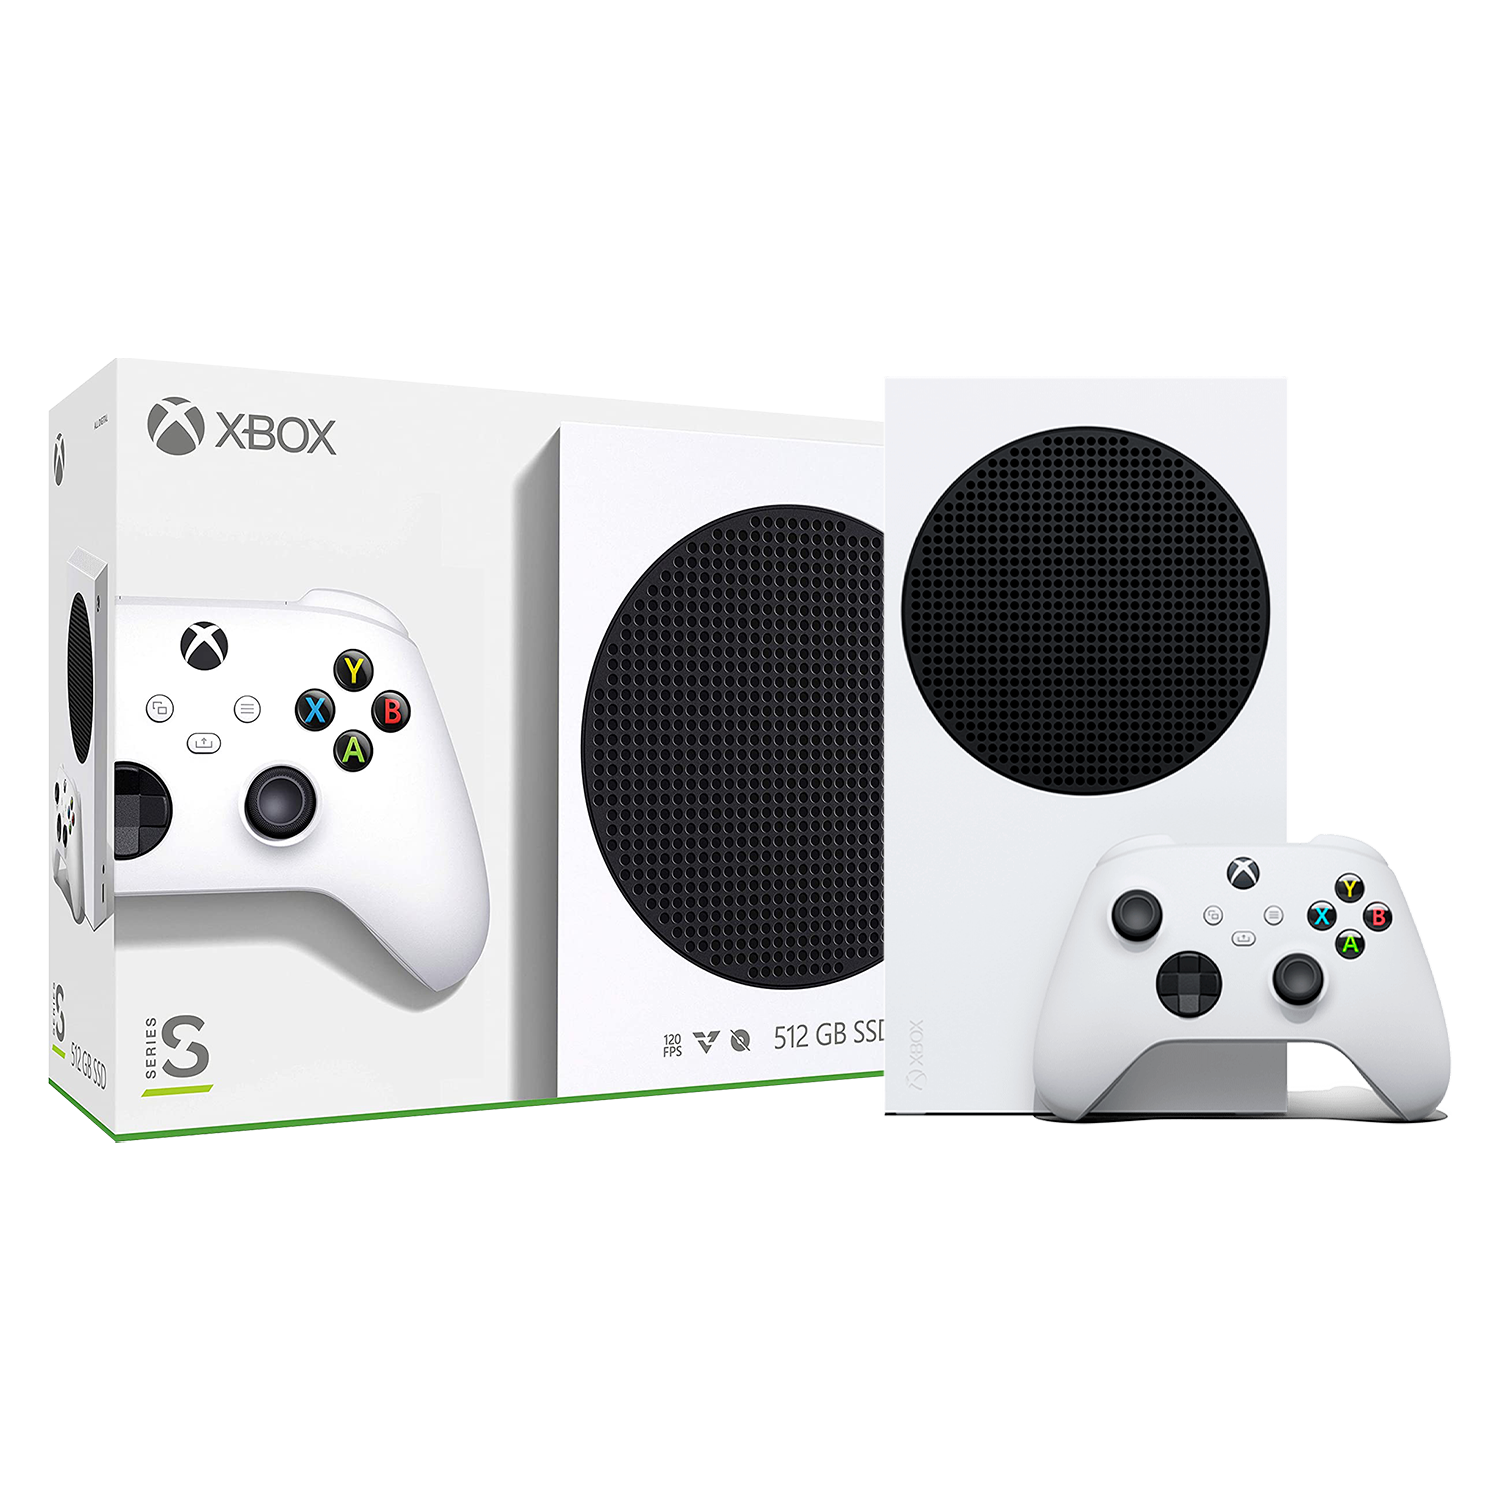 Venda de Xbox 360, Compra e venda de Xbox 360 no atacado